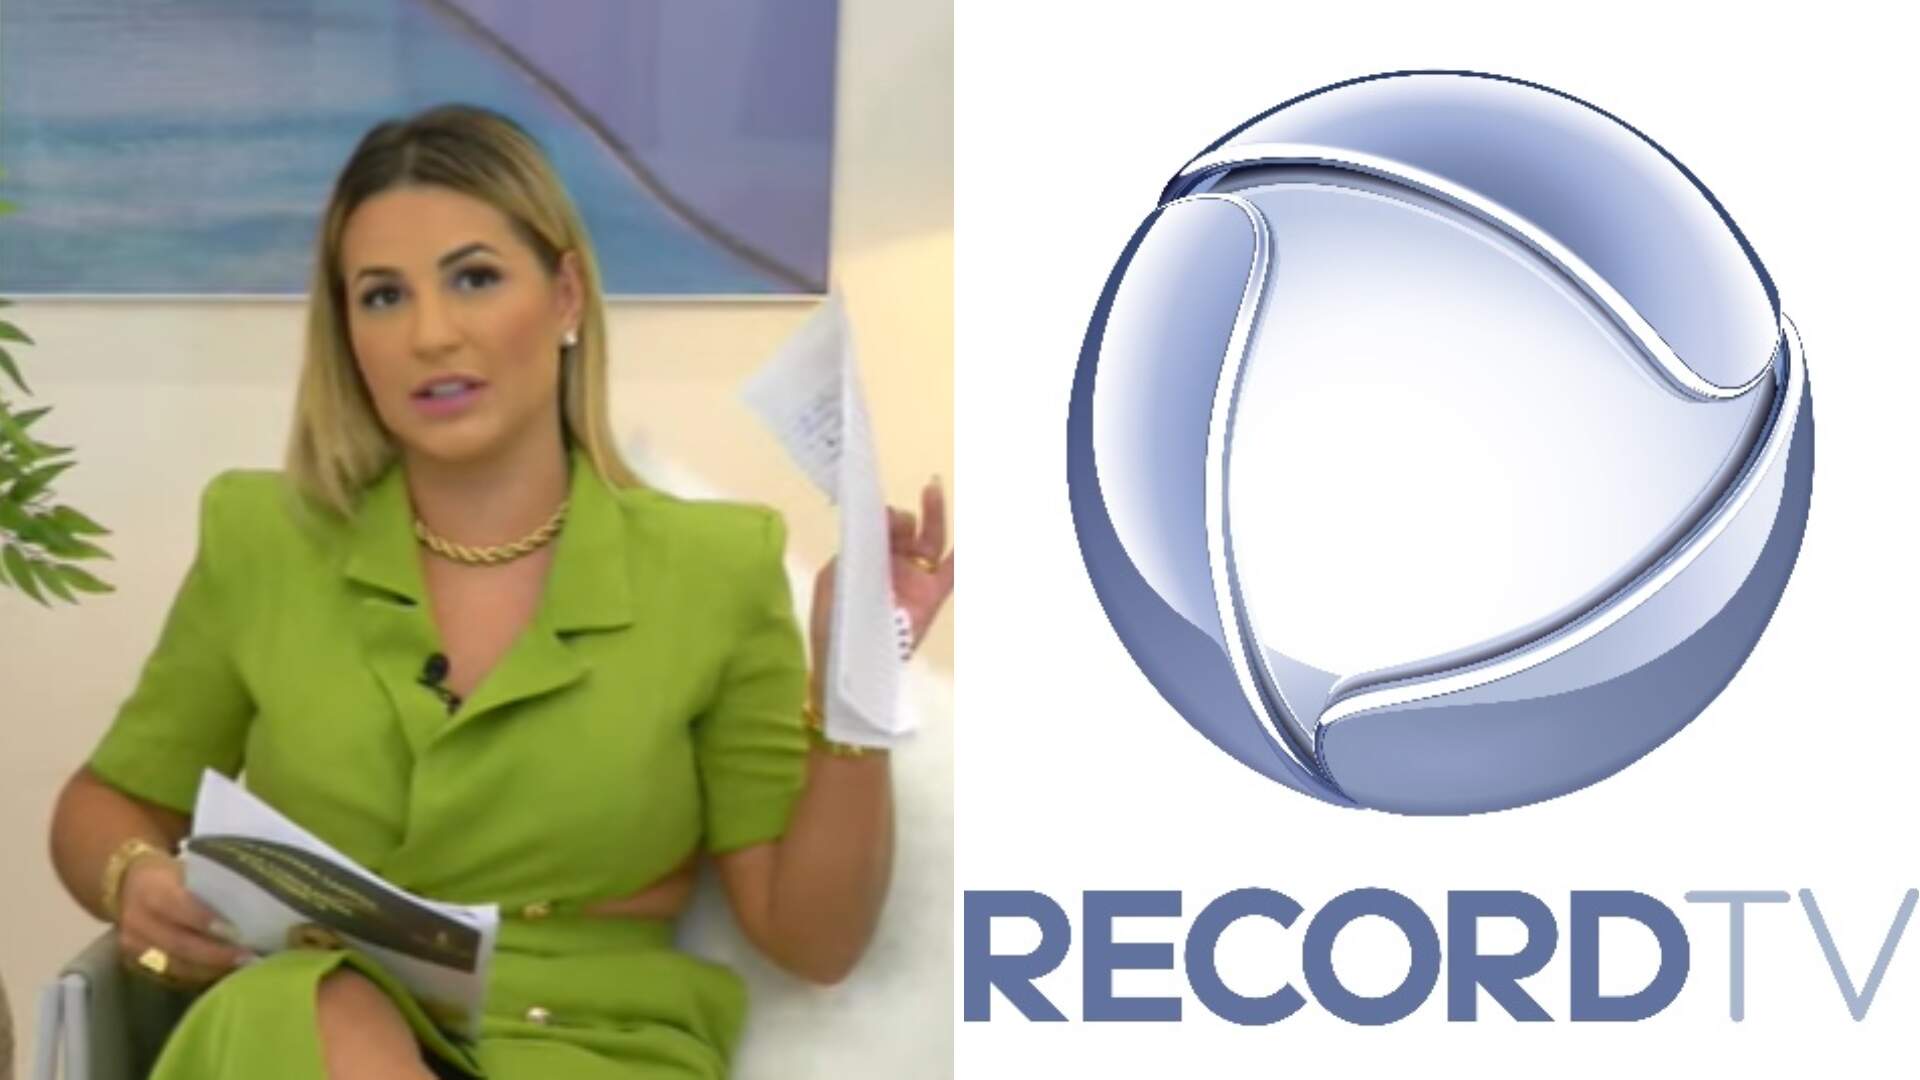 Deolane rasga o verbo durante live e expõe RecordTV, ‘A maior mentira da televisão!’ - Metropolitana FM